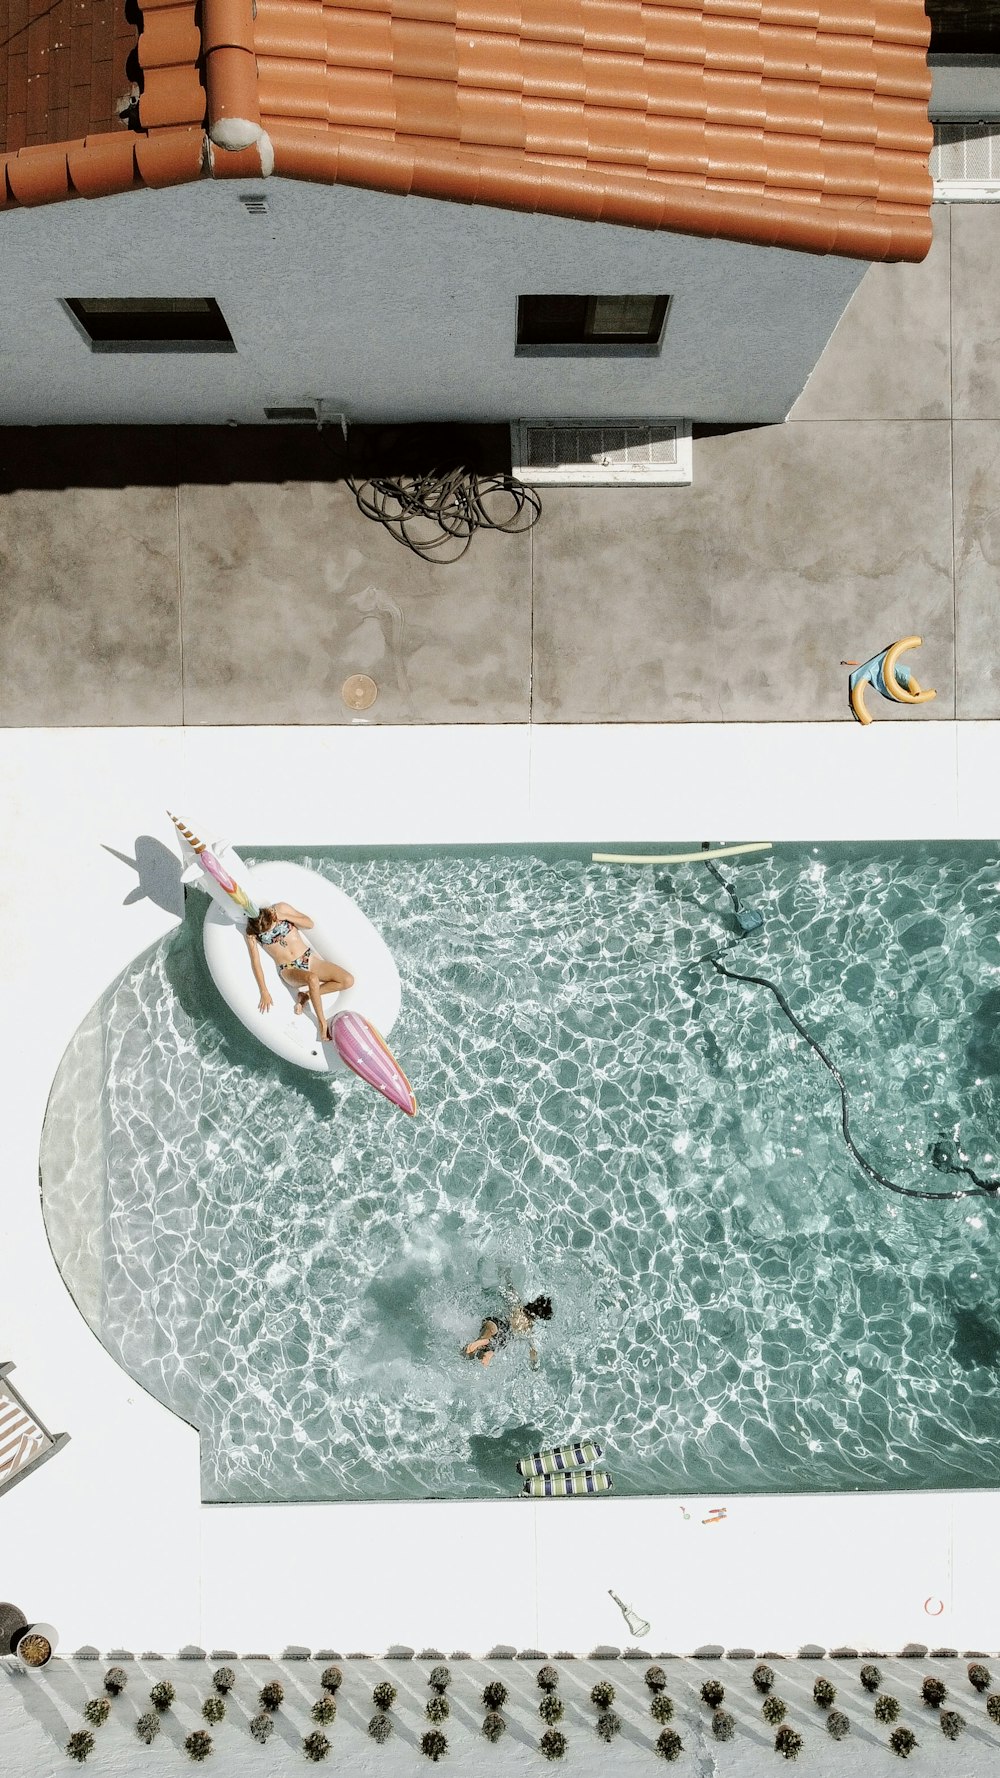 Una donna che cavalca una tavola da surf in cima a una piscina